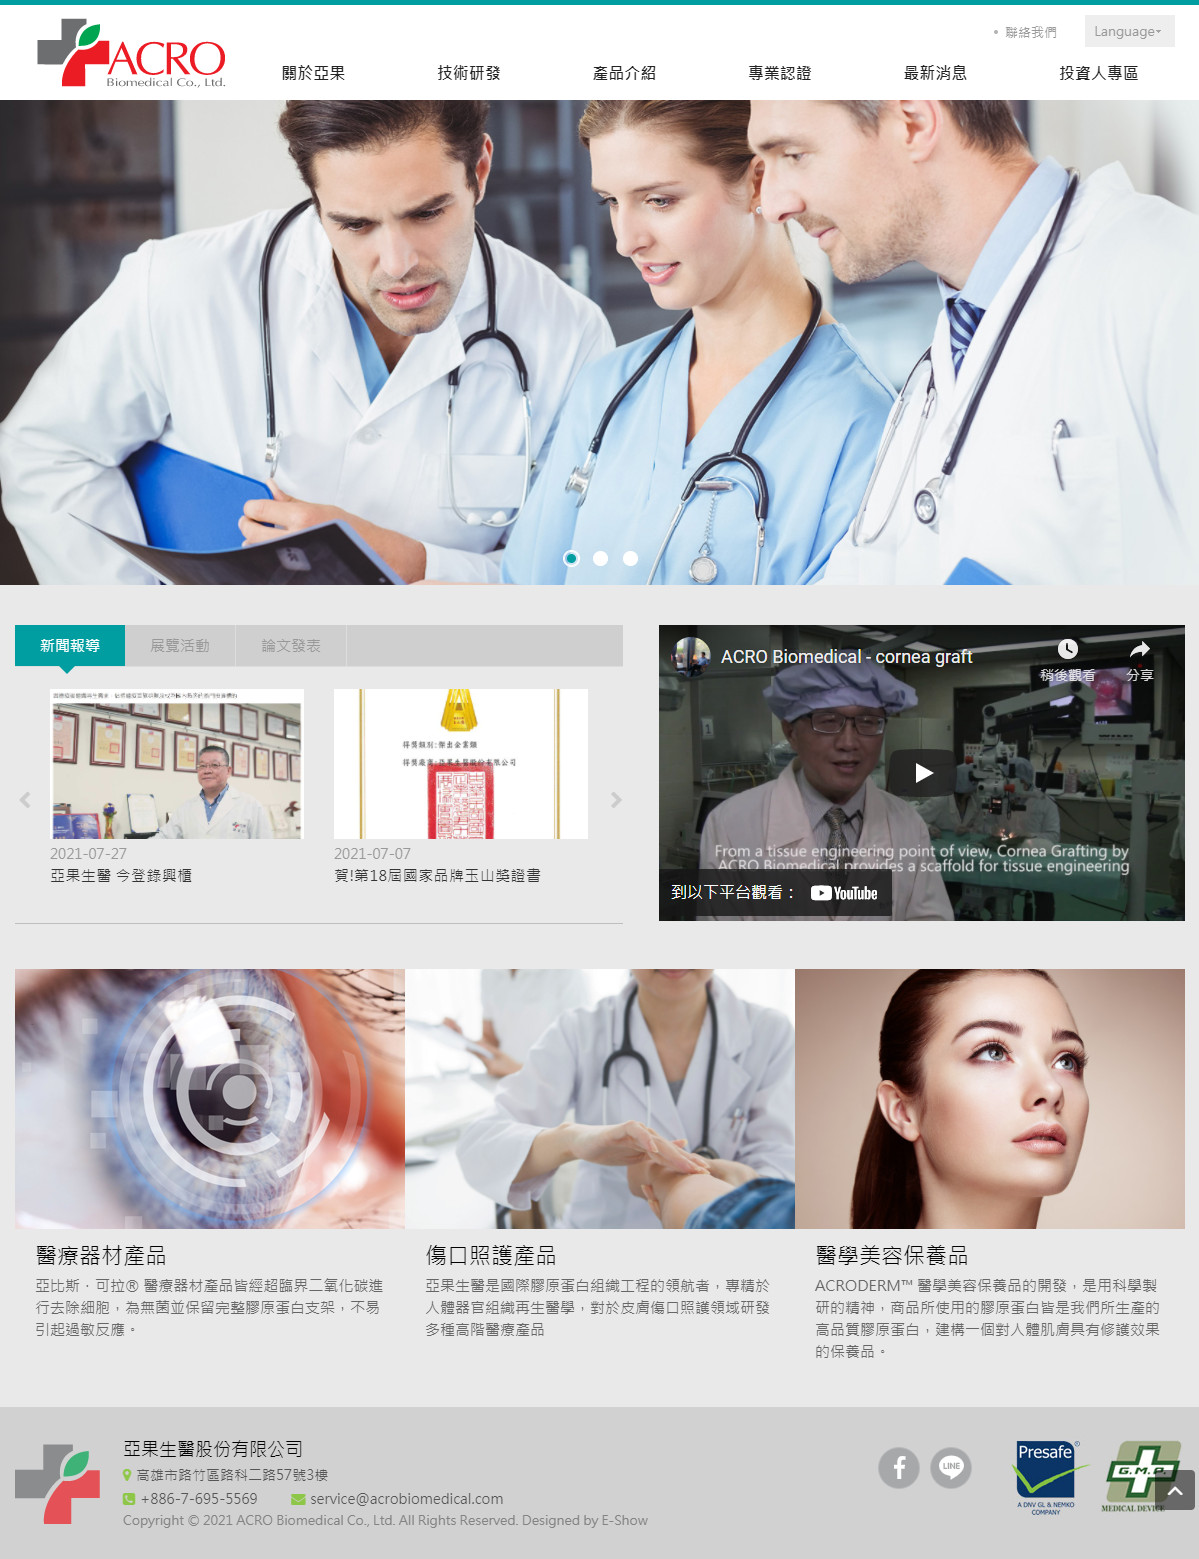 亞果生醫股份有限公司 響應式RWD網頁設計
網站設計